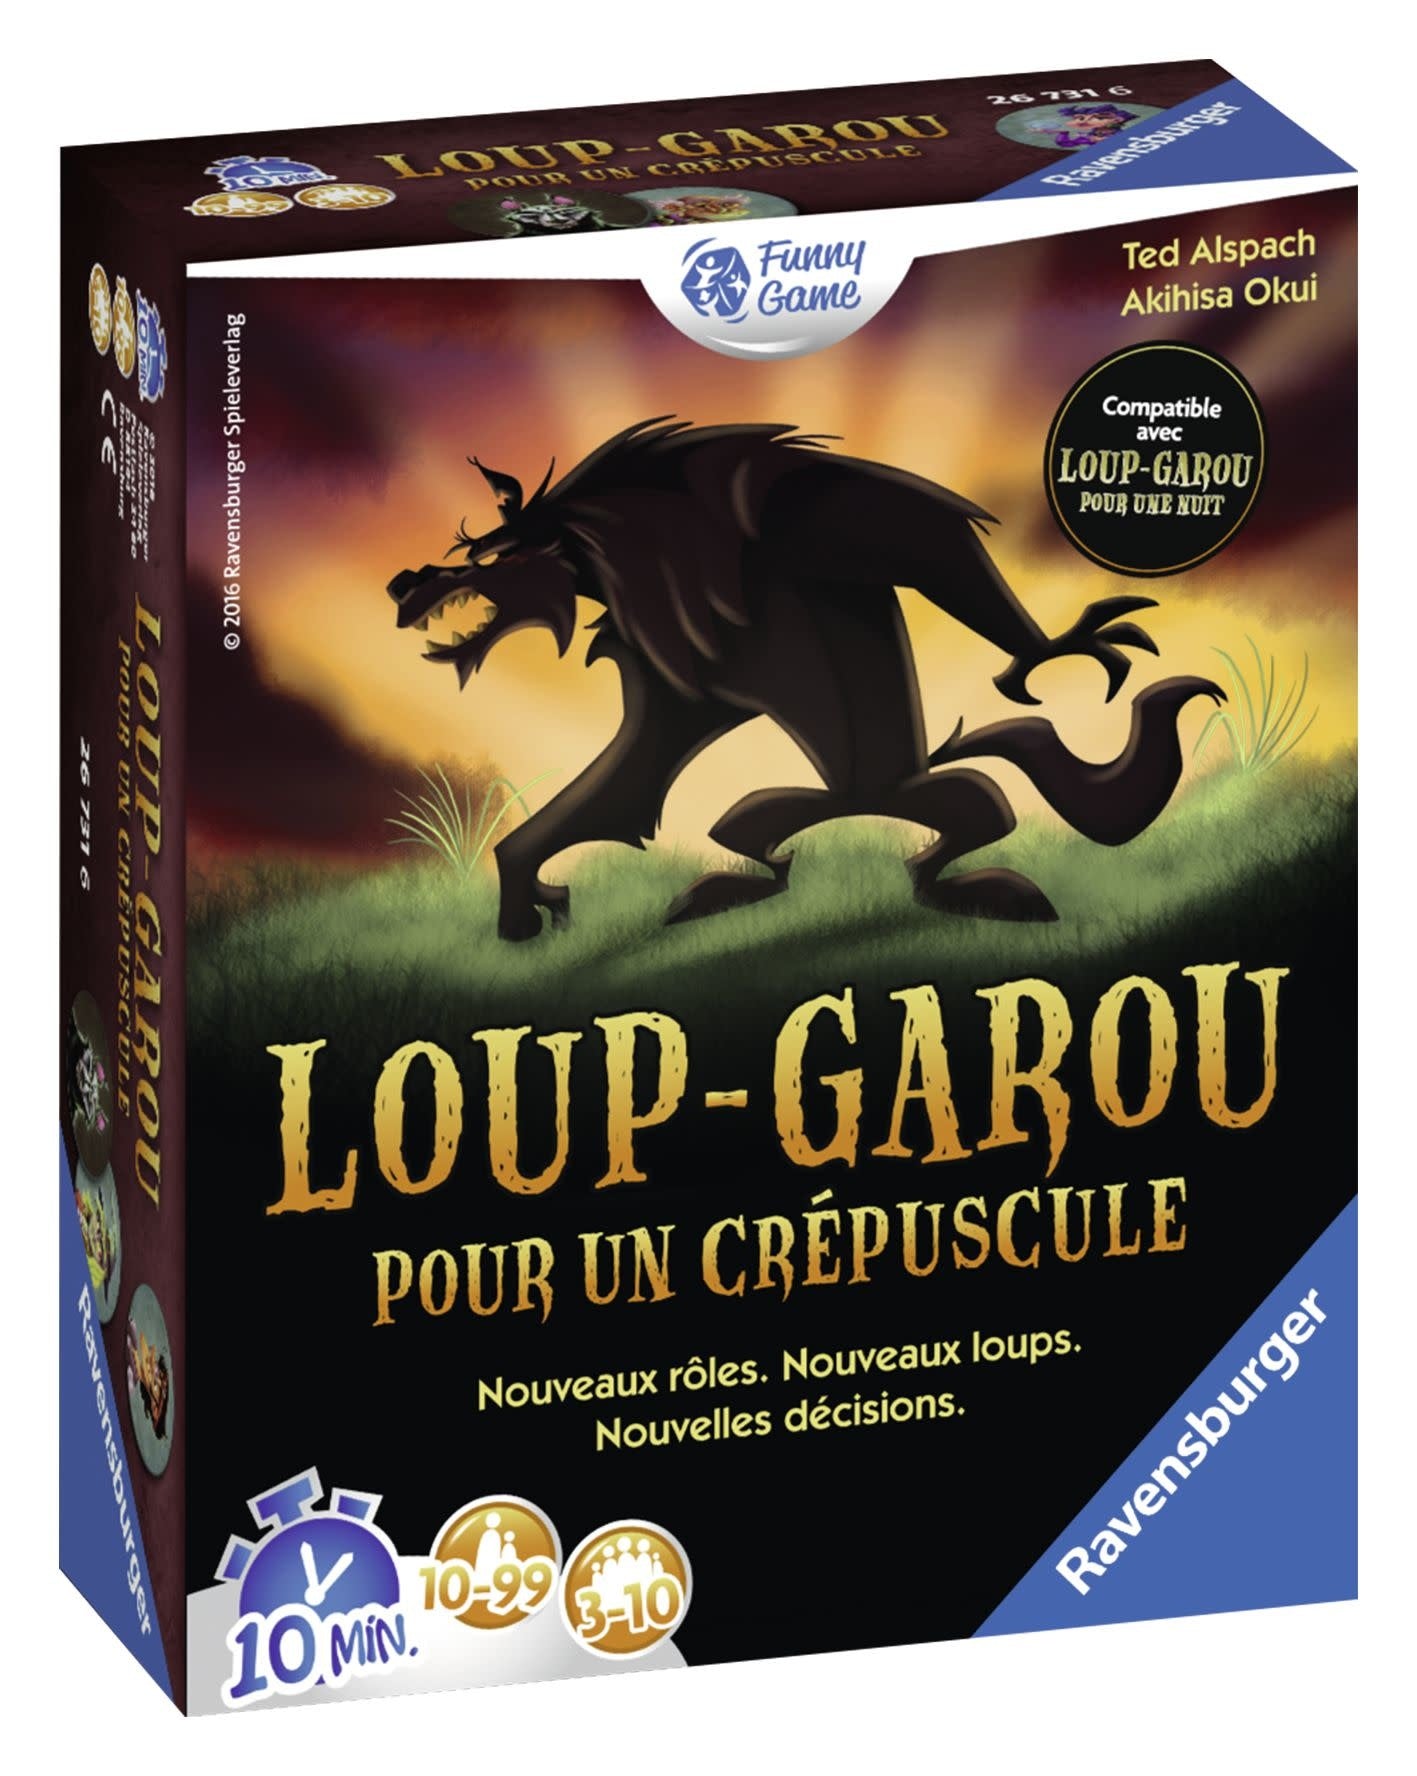 Loup-Garou pour une nuit - Jeux de société et stratégie - JEUX, JOUETS -   - Livres + cadeaux + jeux